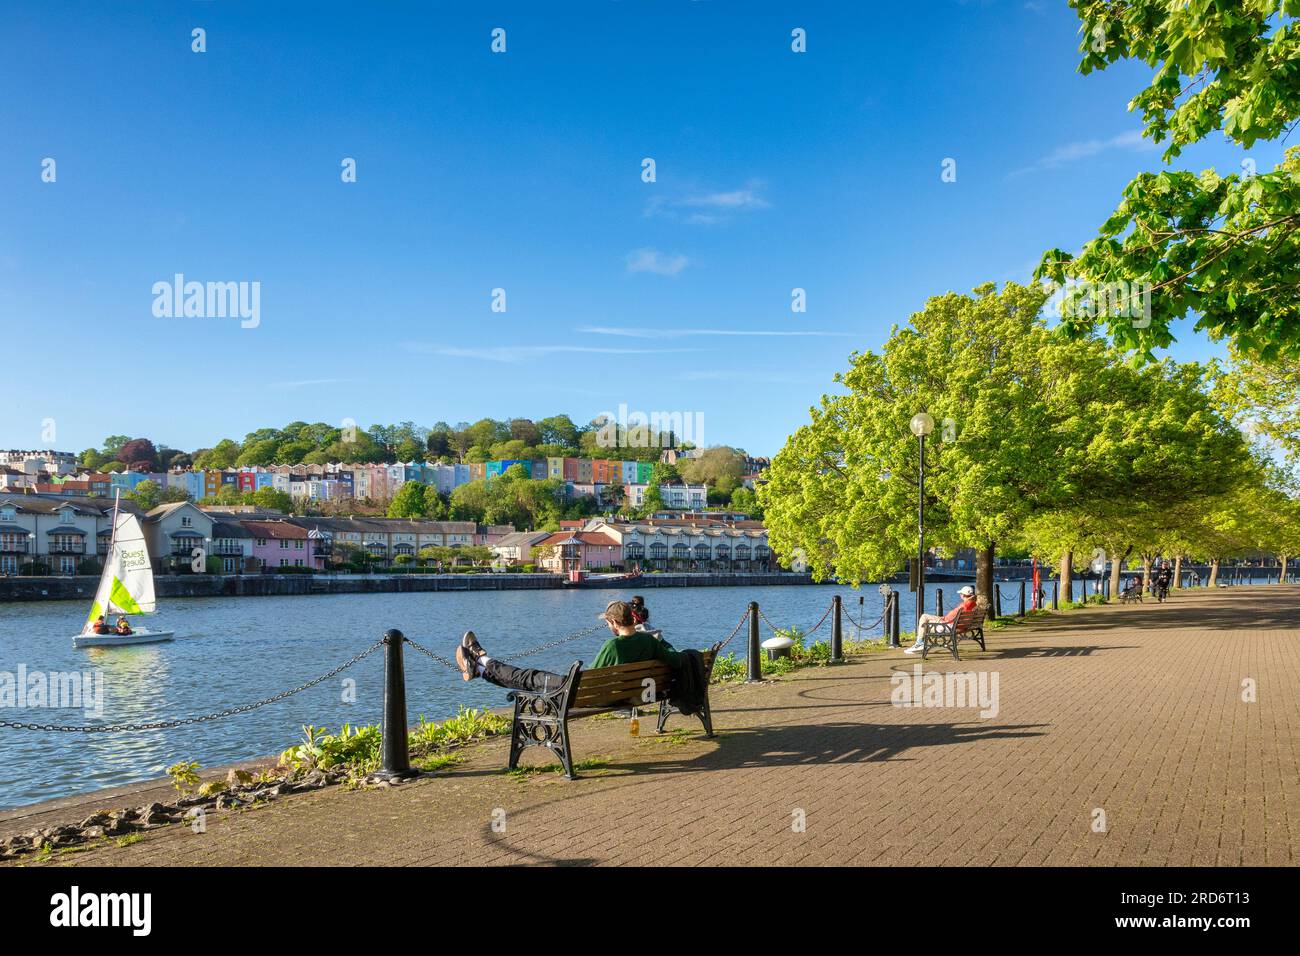 10. Mai 2023: Bristol, Großbritannien - Ein wunderschöner Abend in Bristol Docks, junges Paar, das auf einer Bank sitzt, farbenfrohe Häuser, frische grüne Bäume, blauer Himmel, Segeln Stockfoto